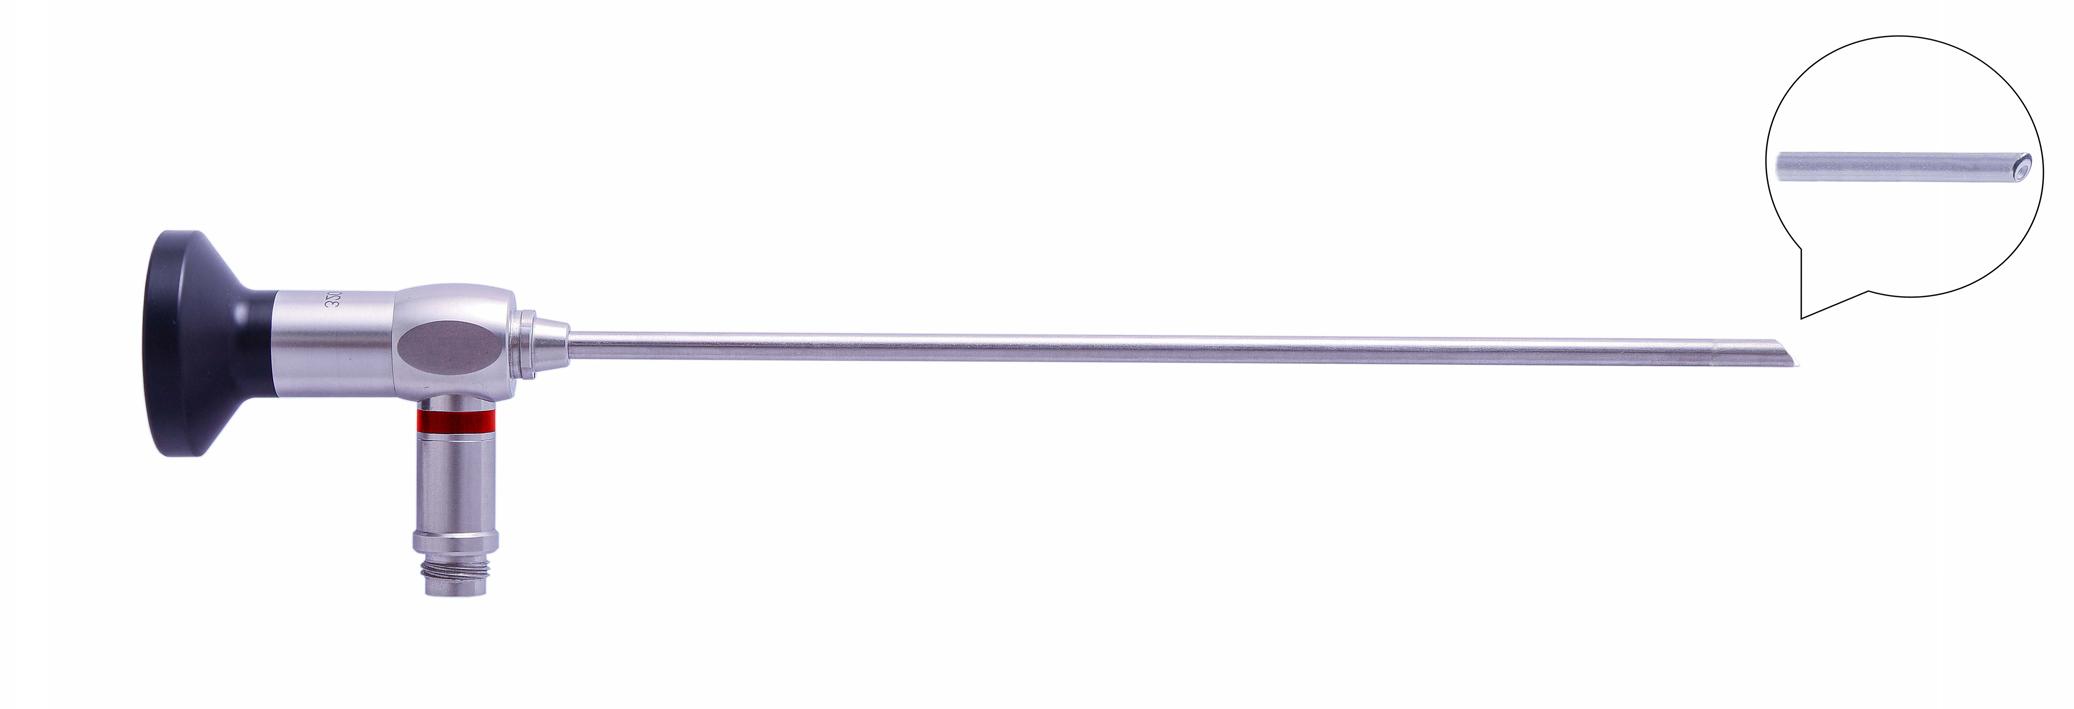 Трубка оптическая (артроскопическая, риноскопическая) ТОАР-005 диам. 2.7 мм, с углом наблюдения 30 гр.